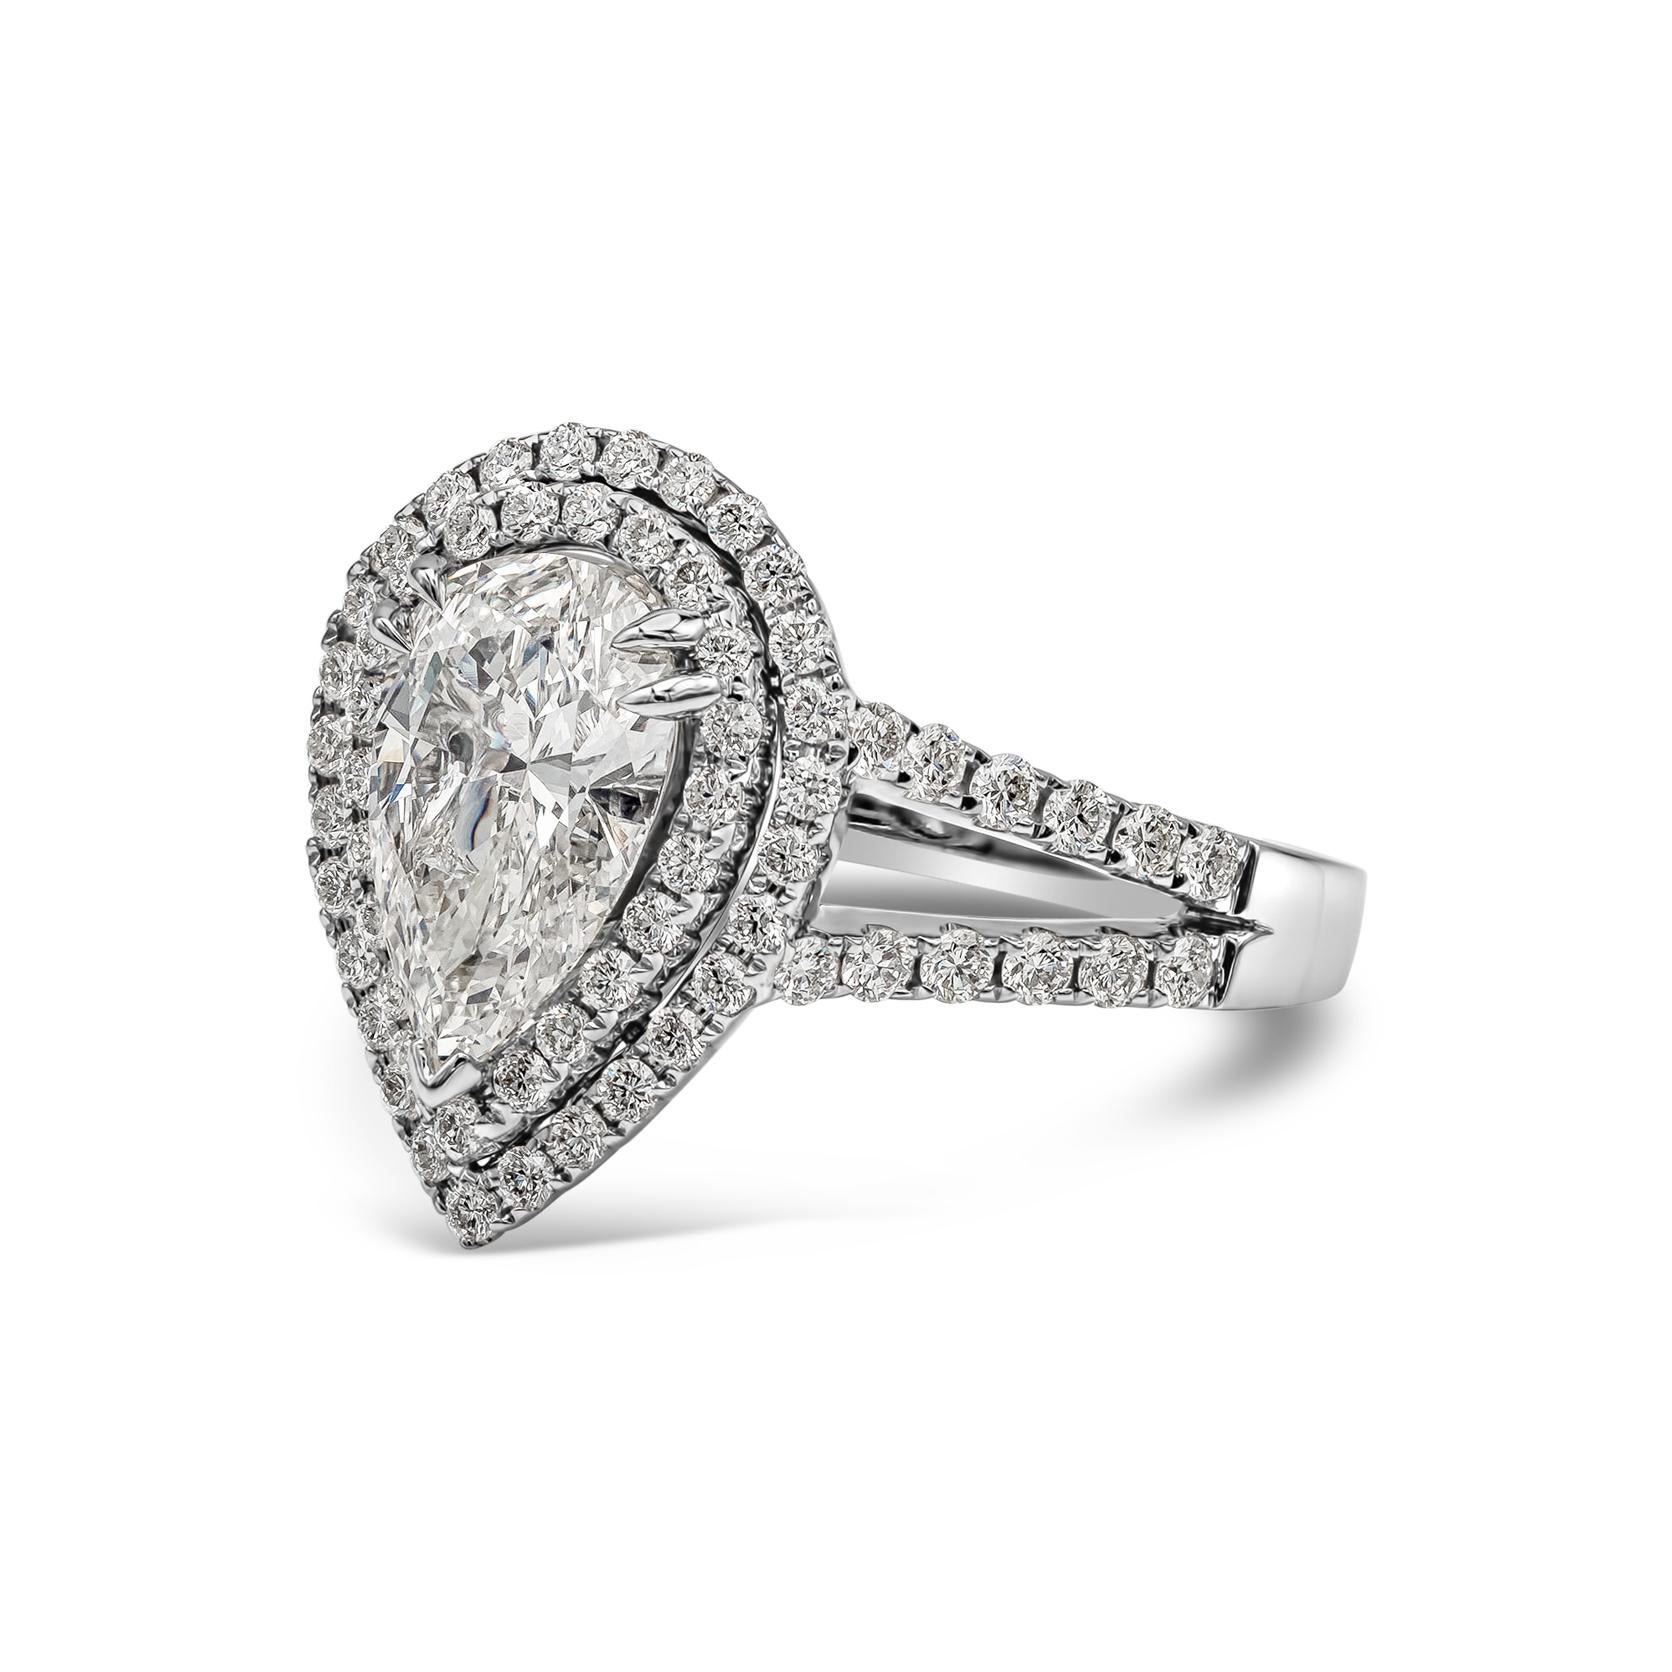 Whitingante présente un diamant poire de 1,53 carats certifié par la GIA de couleur H et de pureté VS1, entouré de deux rangées de diamants ronds de taille brillant dans une monture fendue en or blanc 18 carats. Les diamants accentués pèsent 0.71